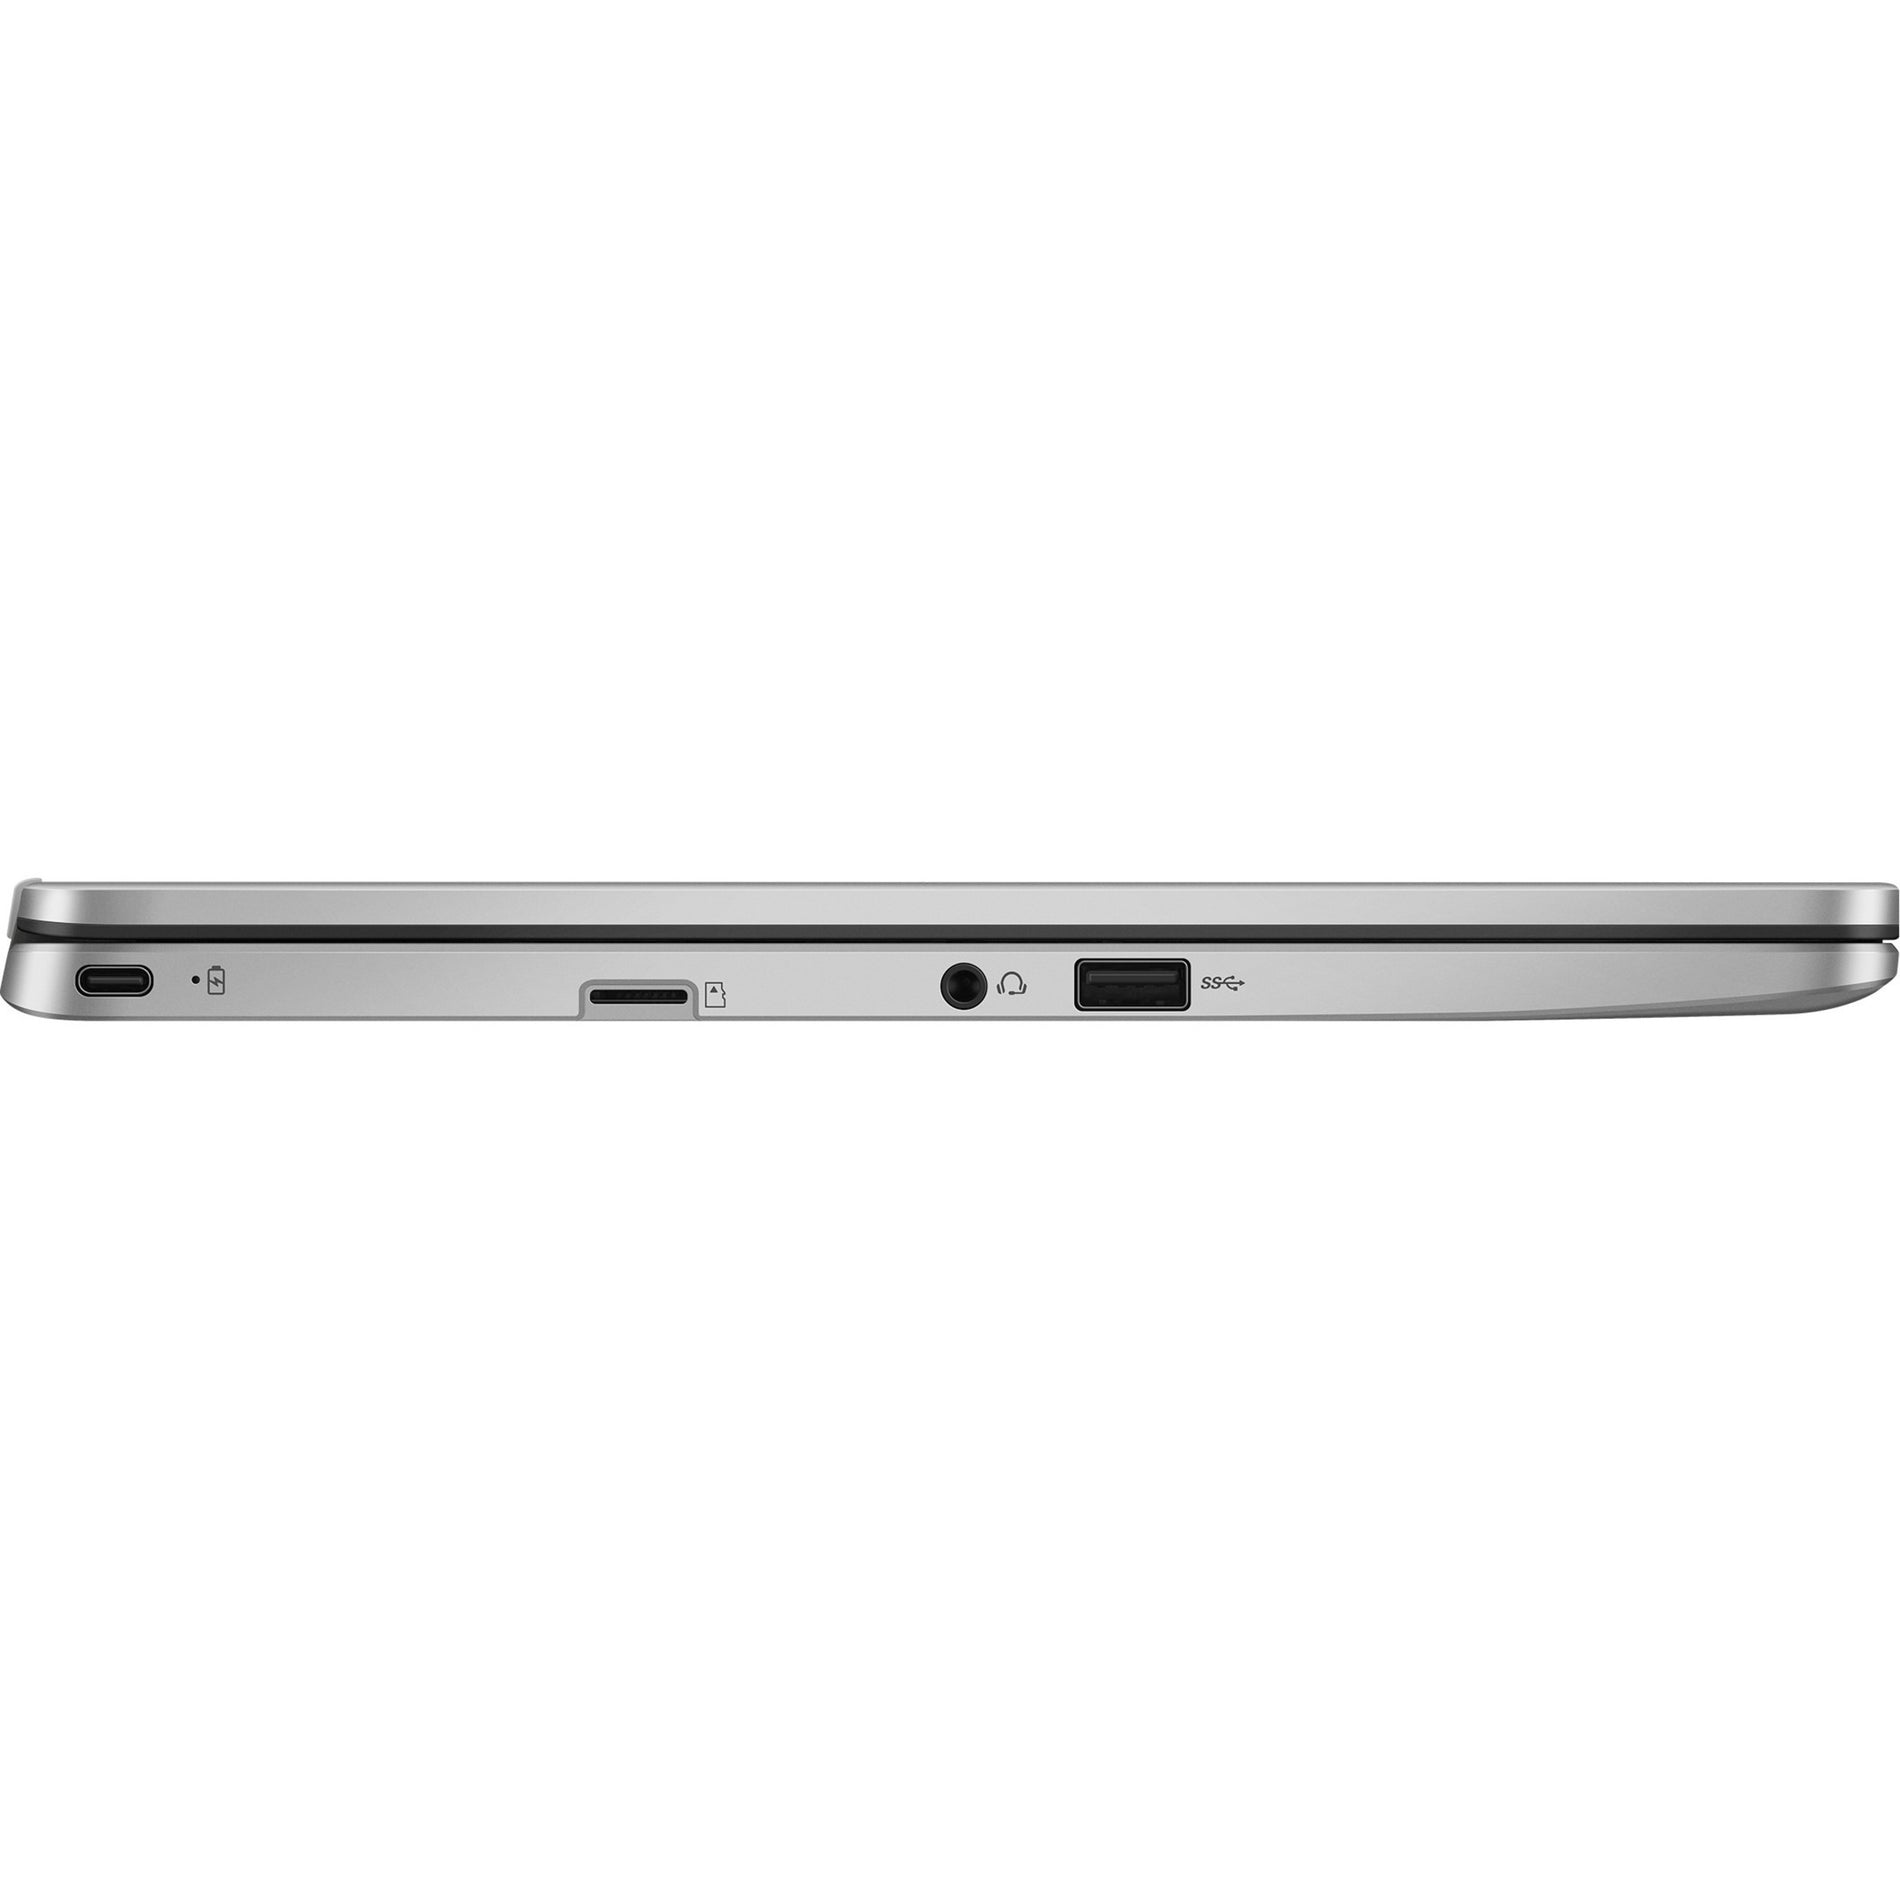 华硕 C424MA-WH44F Chromebook 14英寸全高清，英特尔赛扬N4020，4GB RAM，64GB闪存，ChromeOS